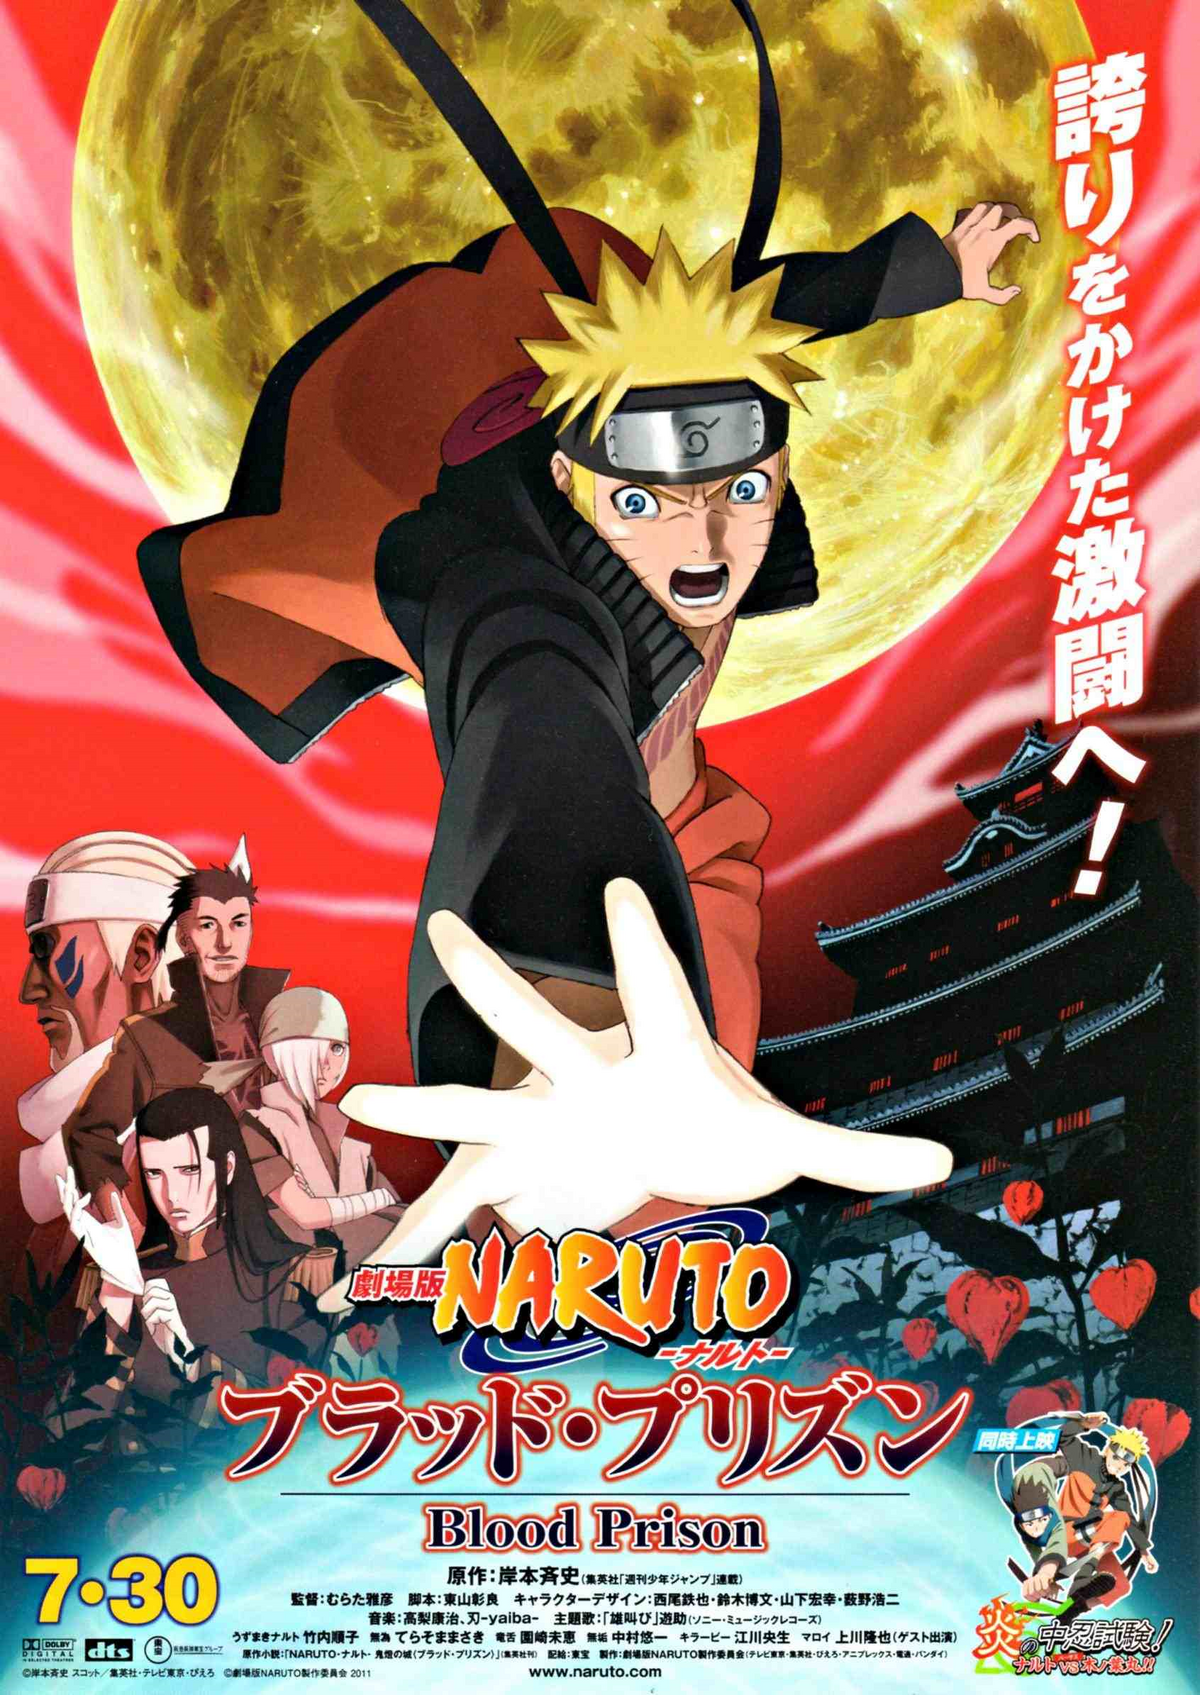 Naruto: Shippuden (season 3) - Wikipedia